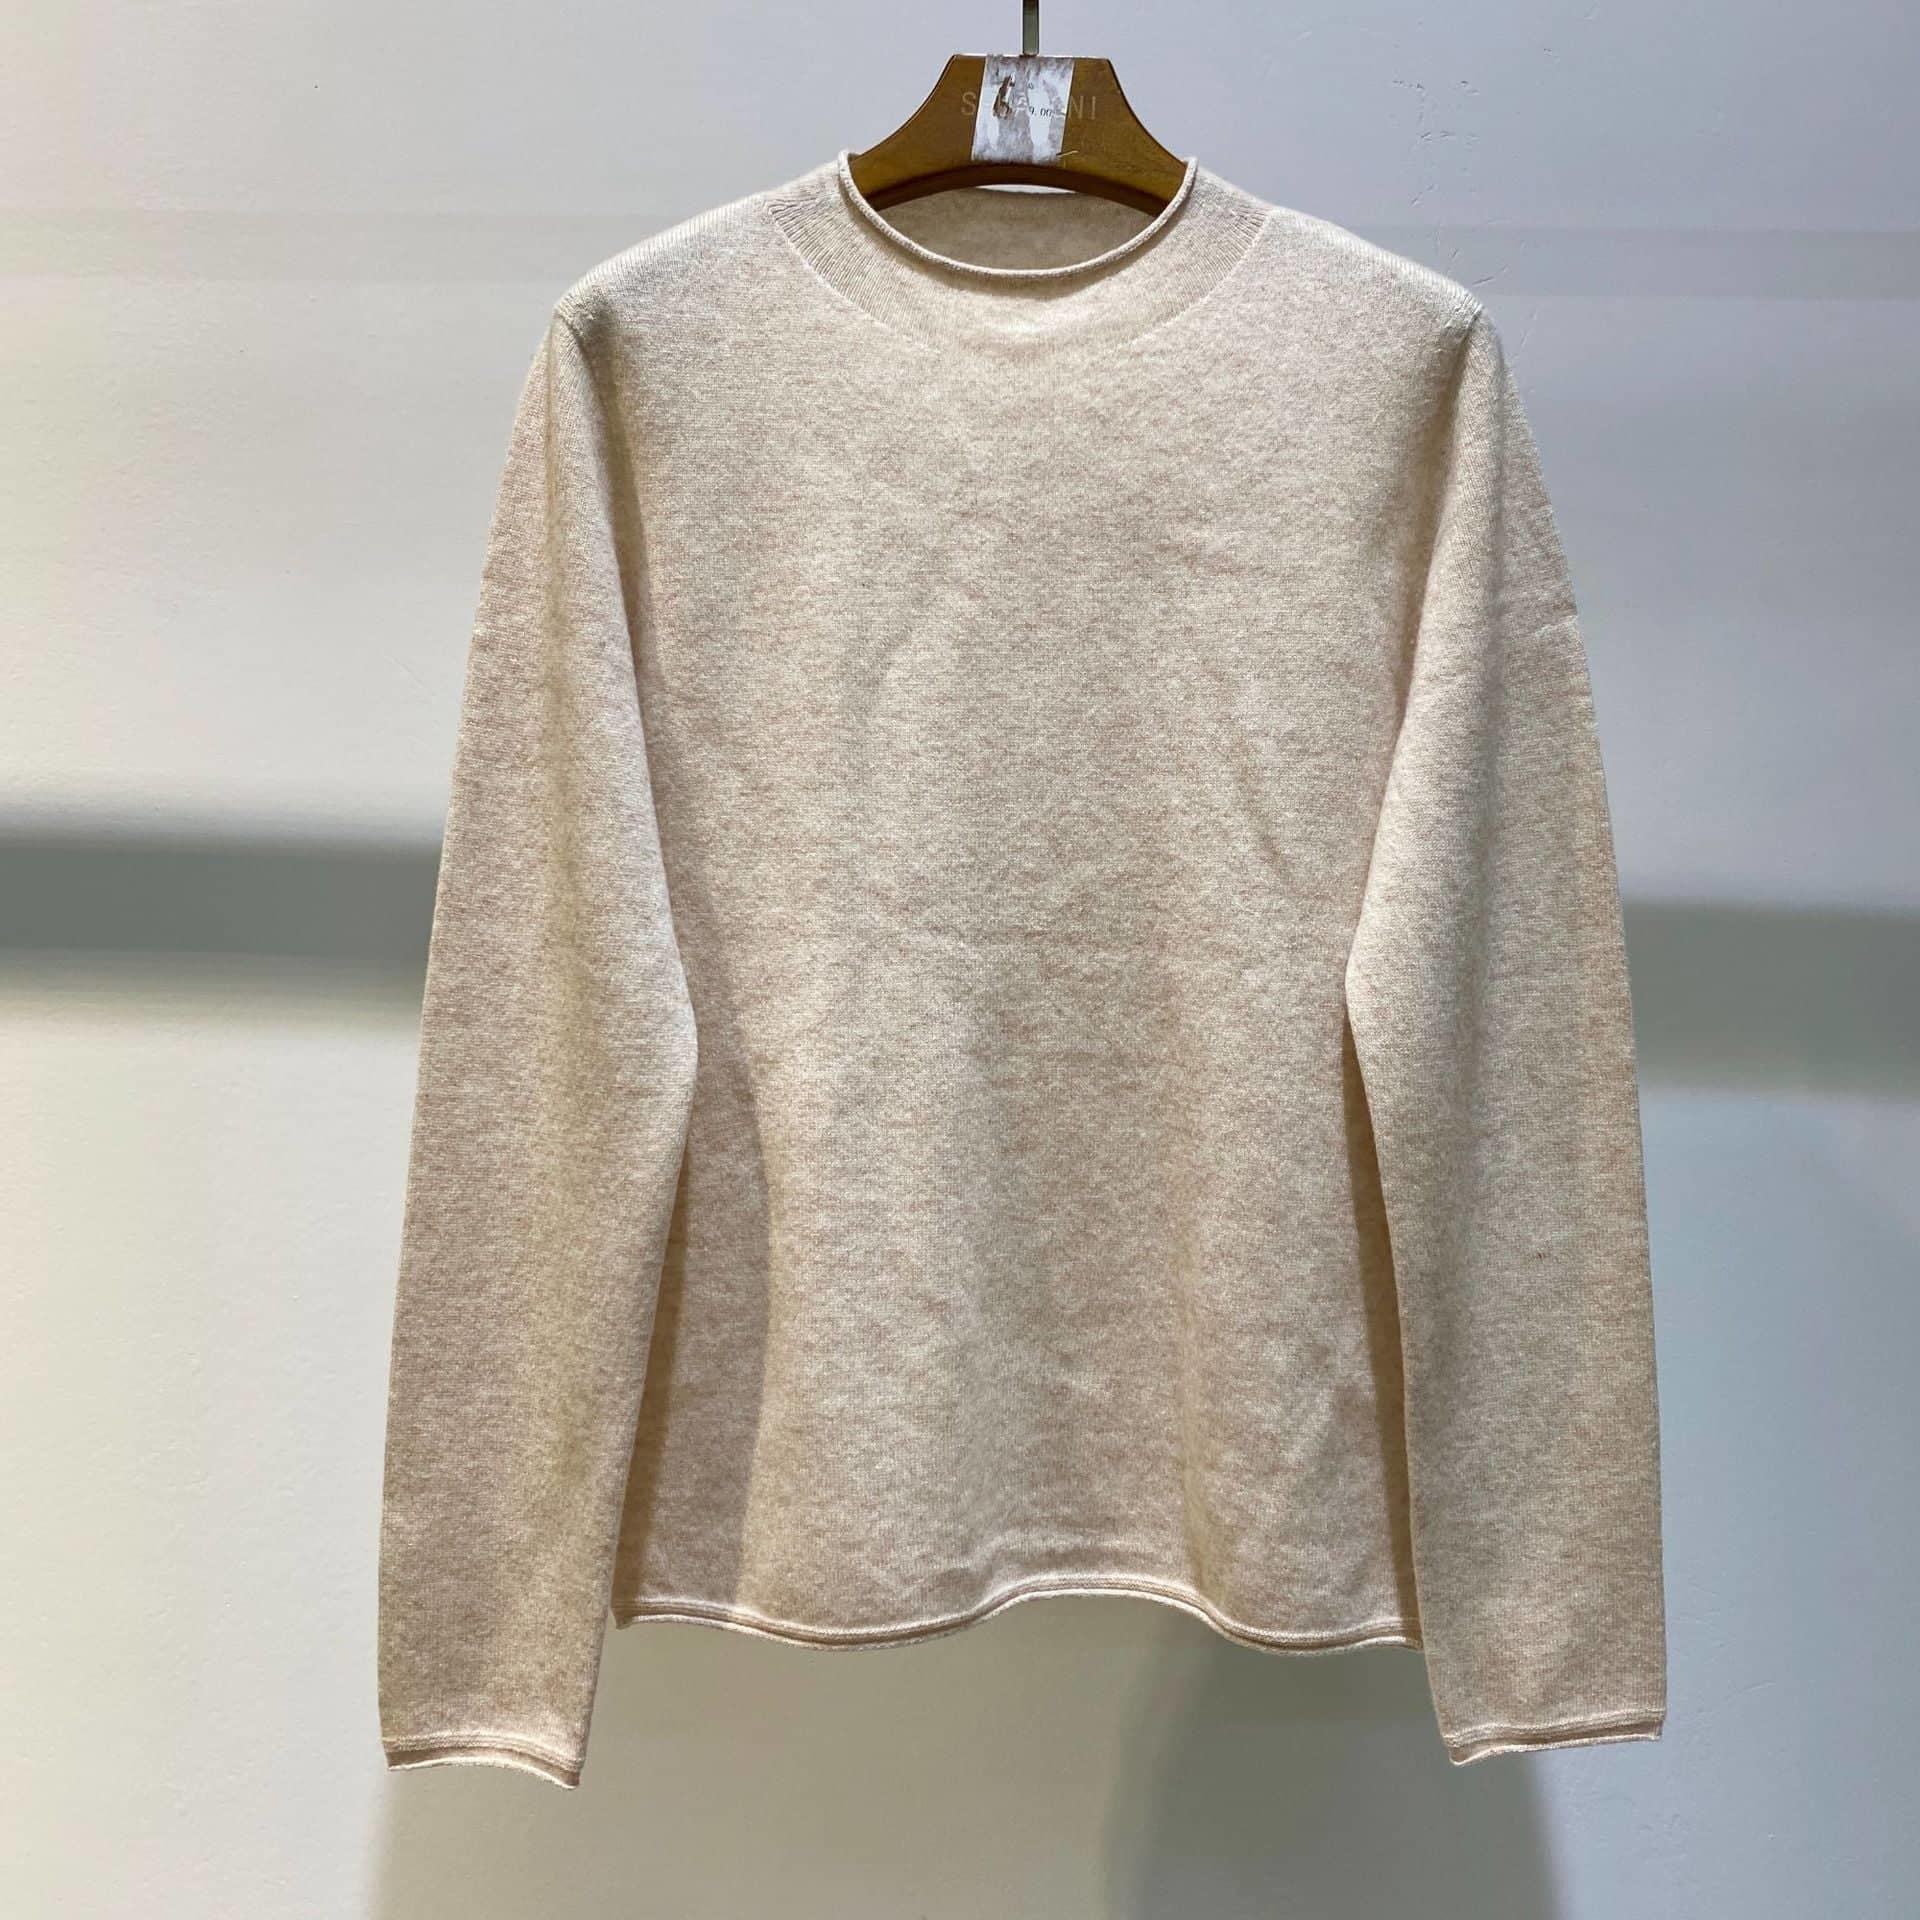 SM-K0031 Autumn And Winter Seamless Wool Knitted Jumper Bottom Shirt